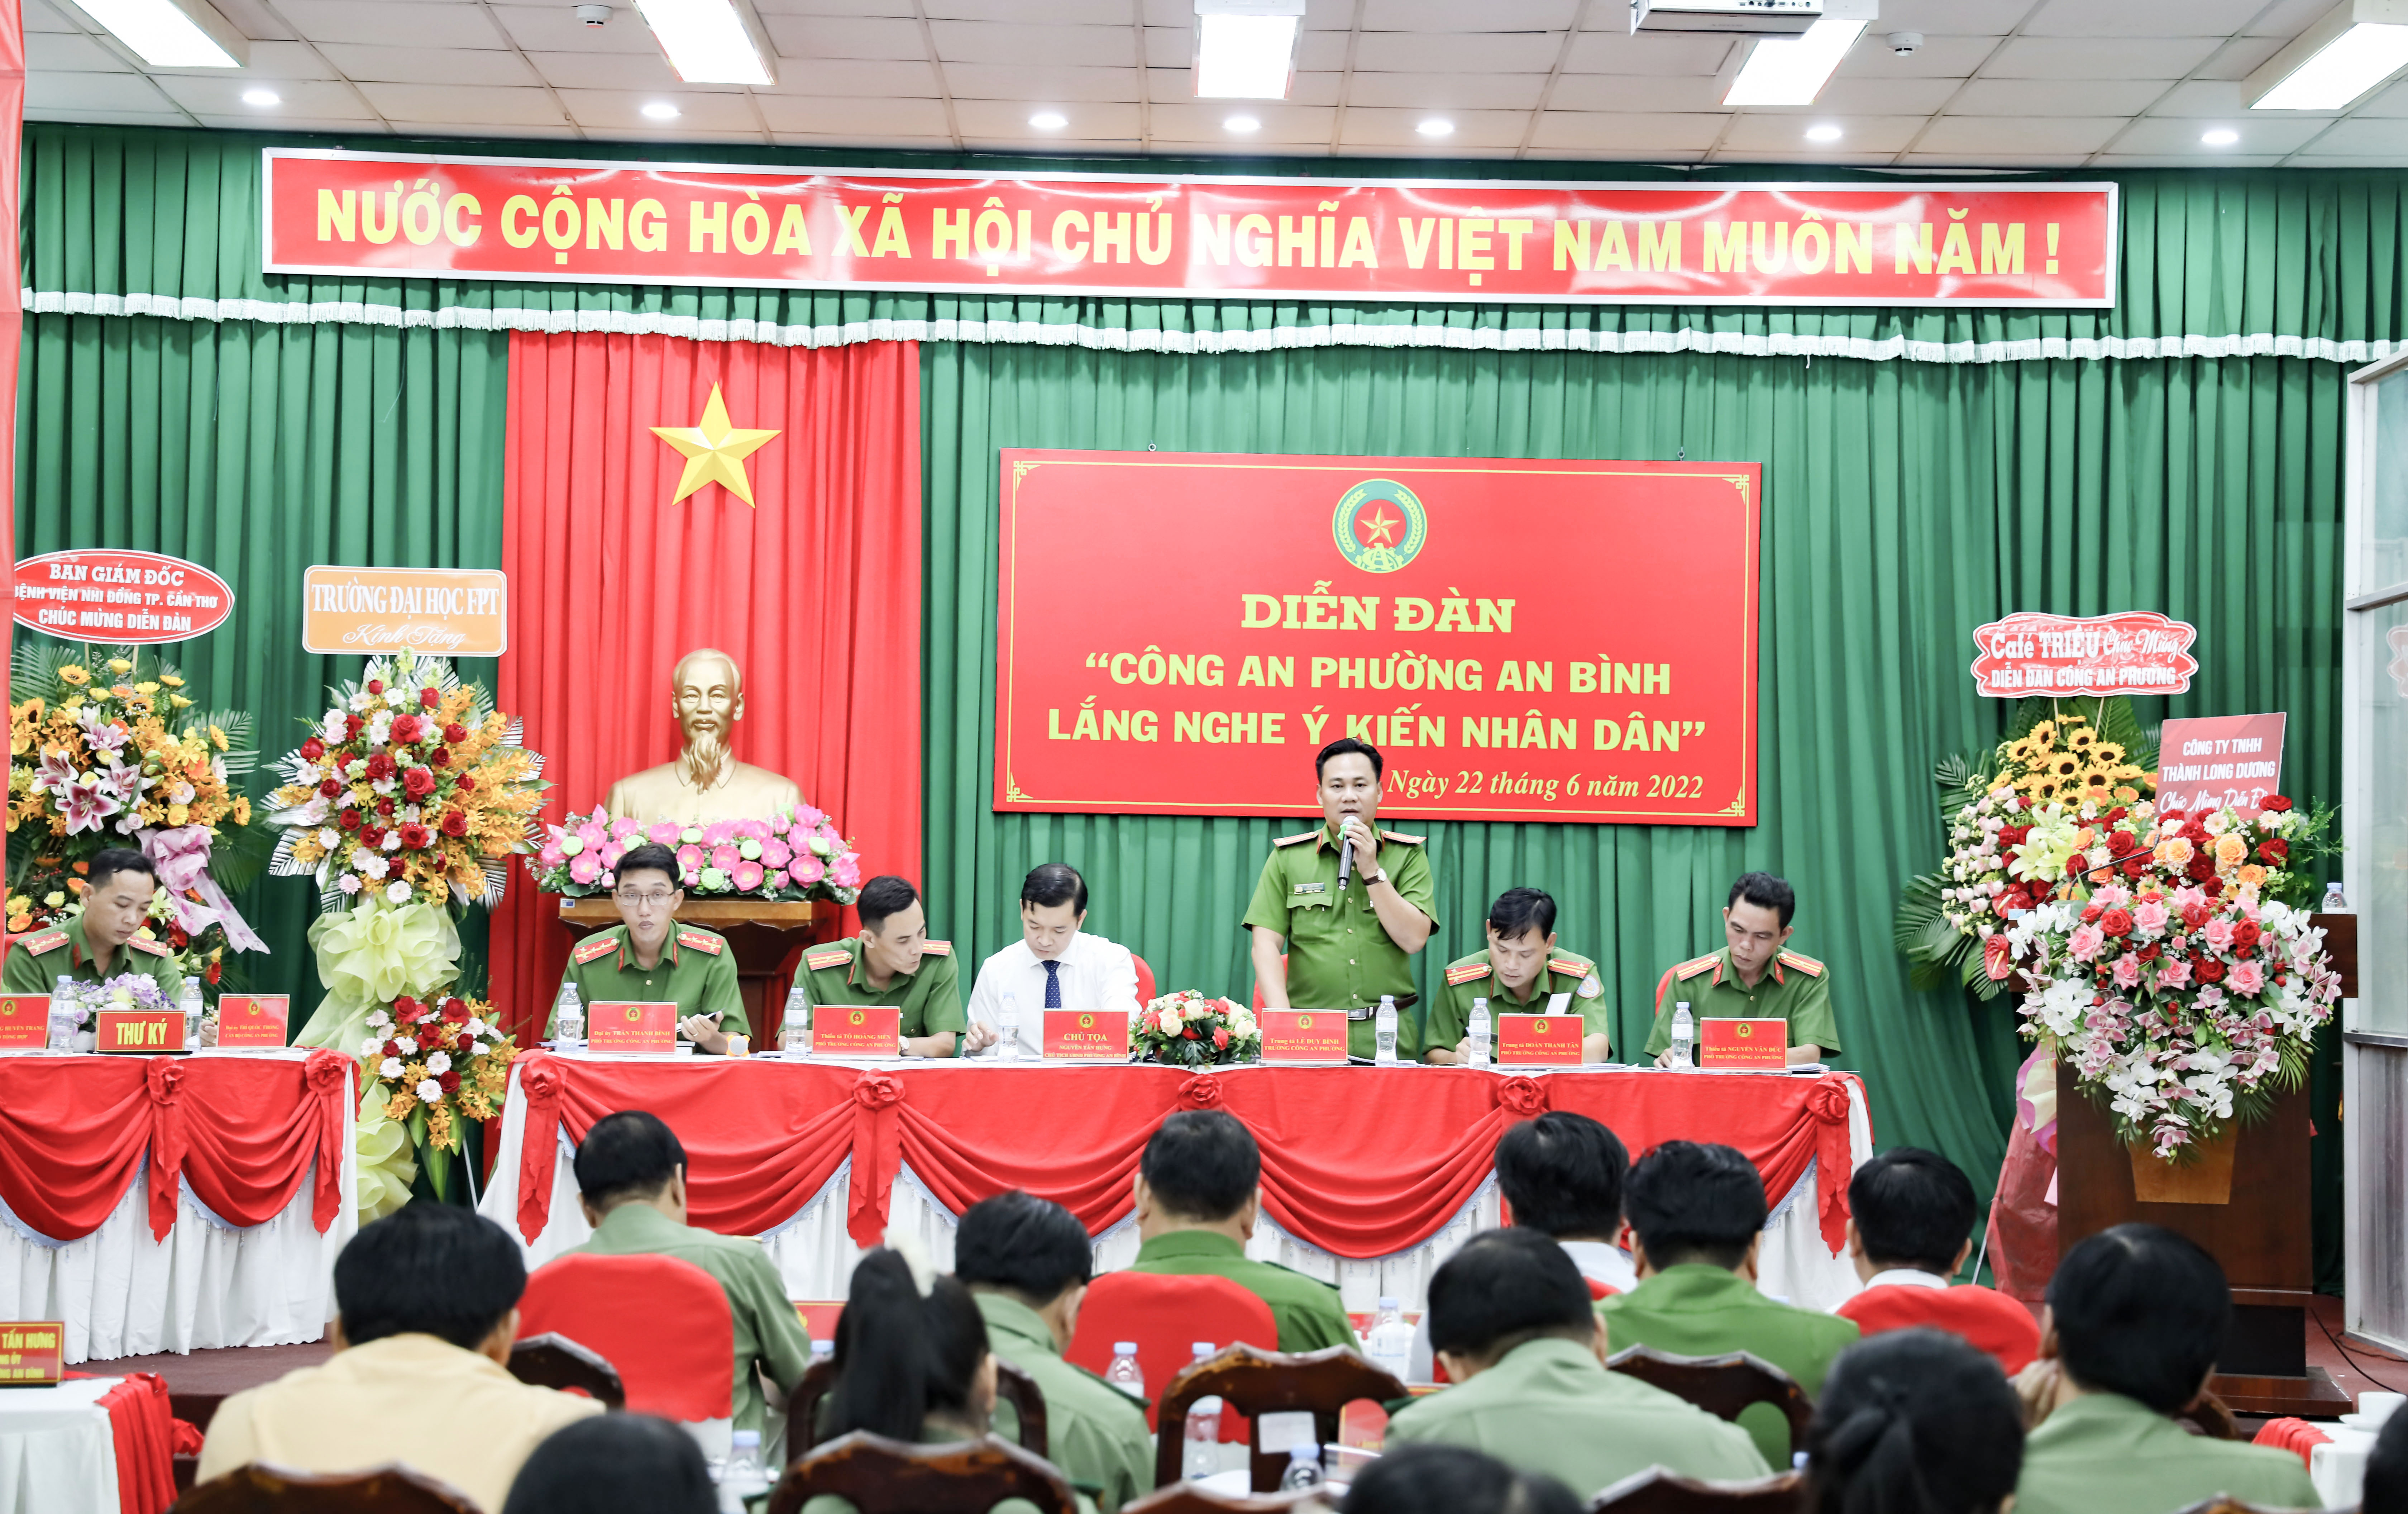 Lãnh đạo Công an phường An Bình, quận Ninh Kiều trả lời các ý kiến của nhân dân.